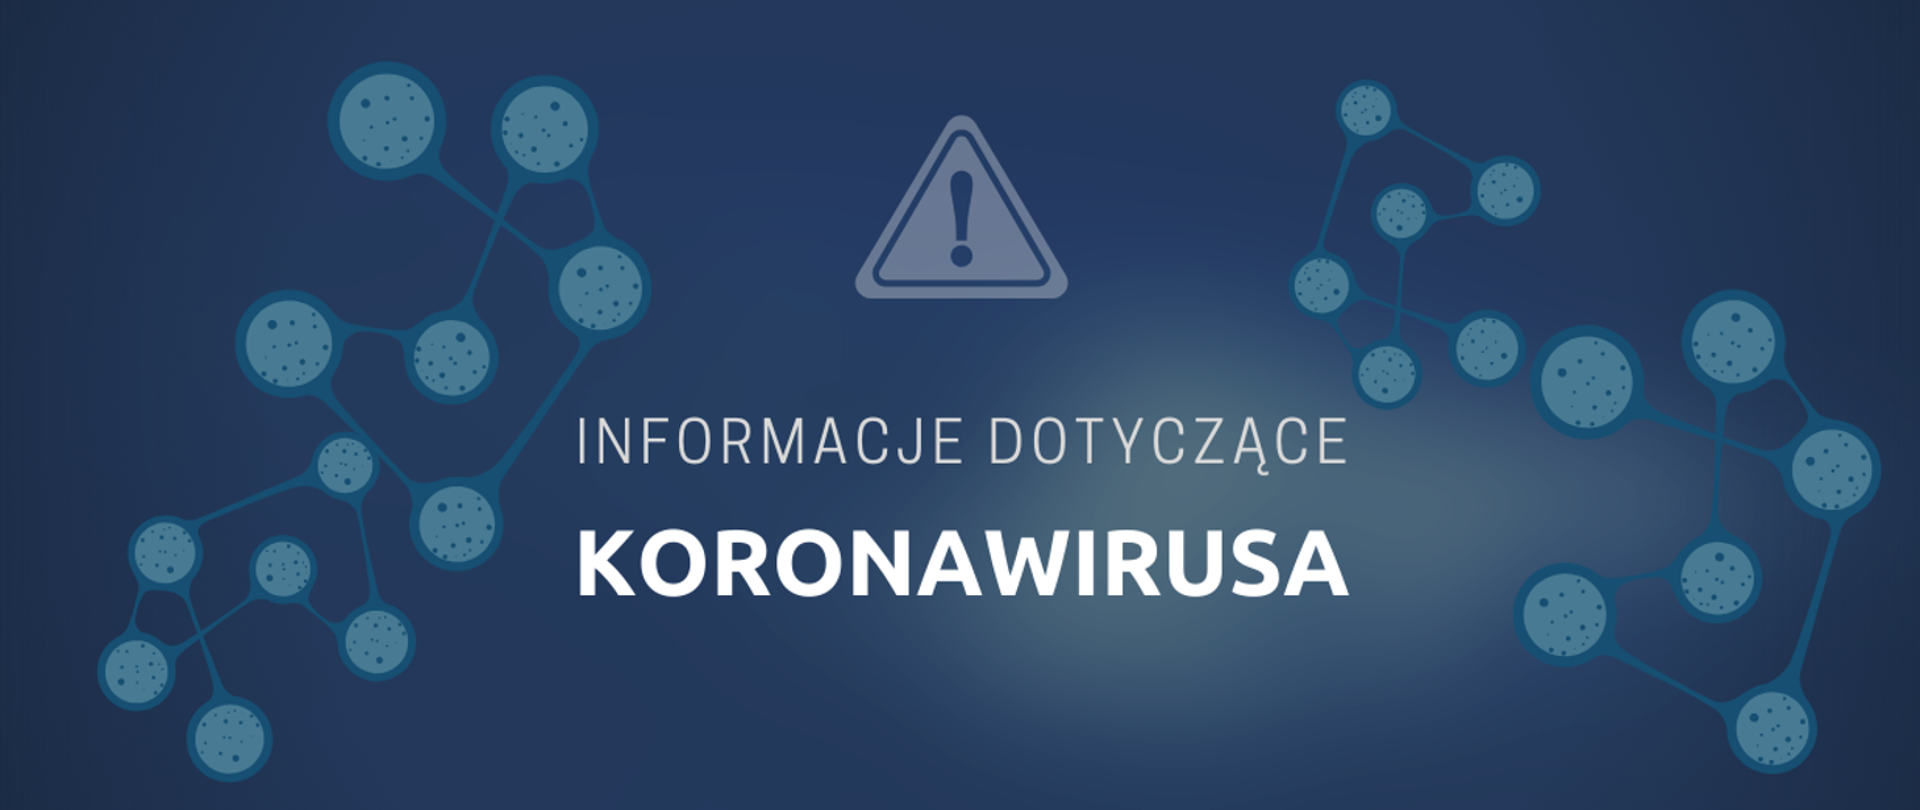 Koronawirus: informacje i zalecenia